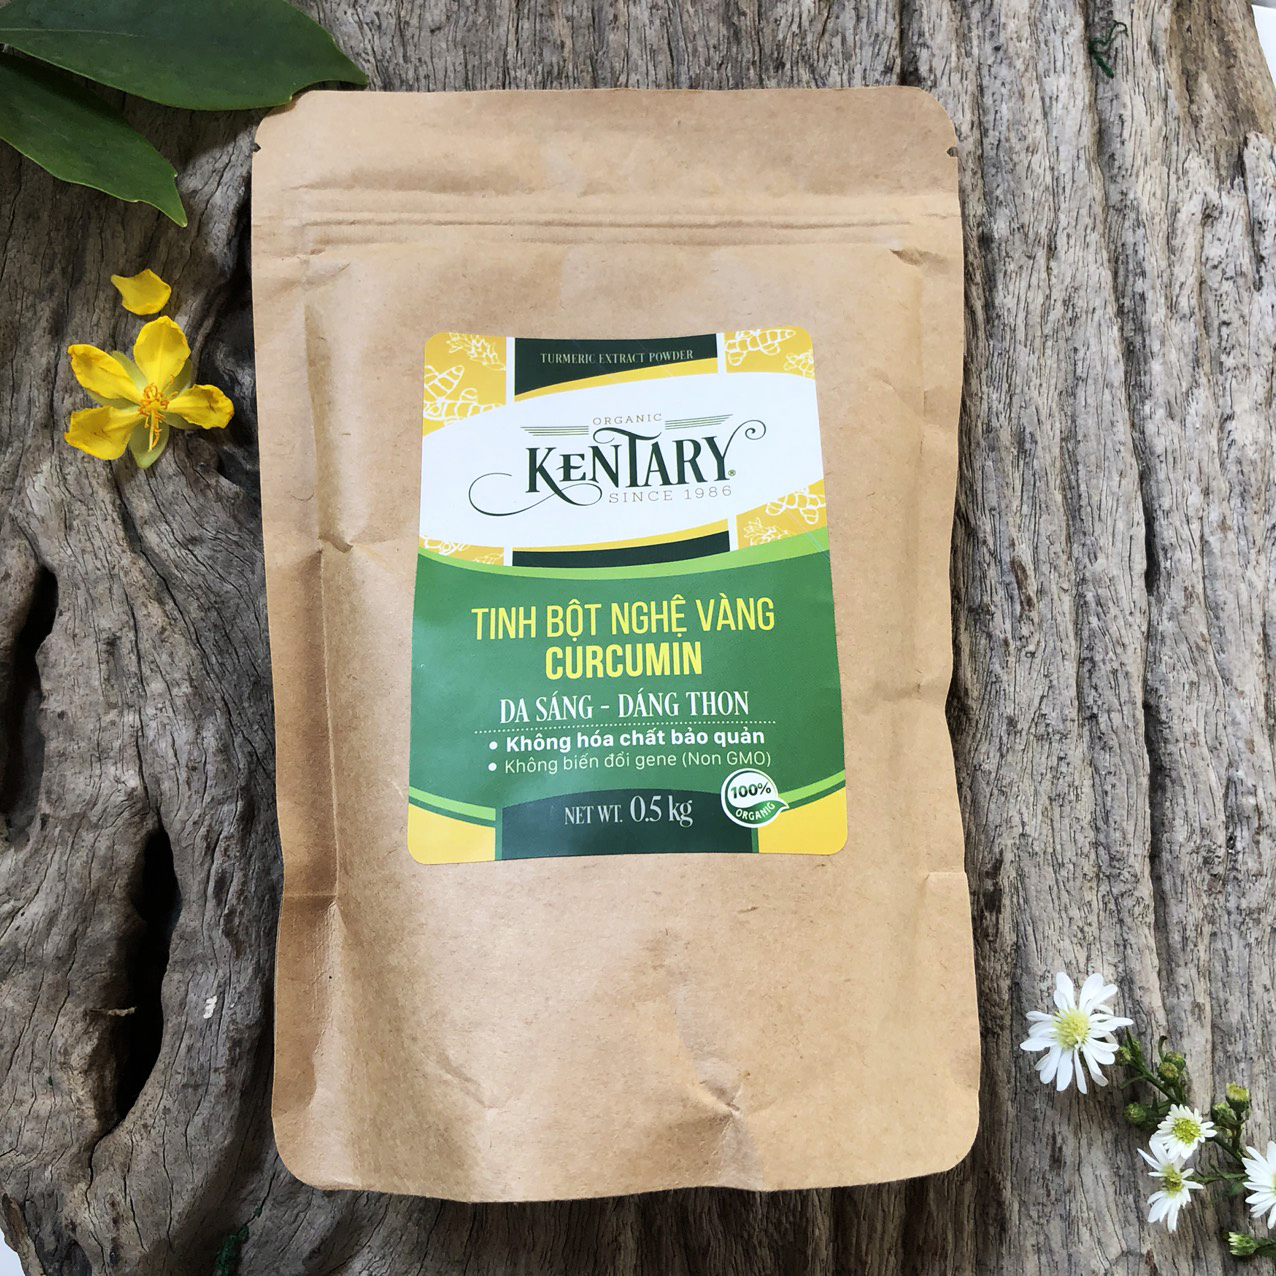 Tinh bột nghệ cam organic Kentary hũ 250g (10% Curcumin), đậm vị nghệ - thực phẩm chăm sóc sức khỏe từ thiên nhiên